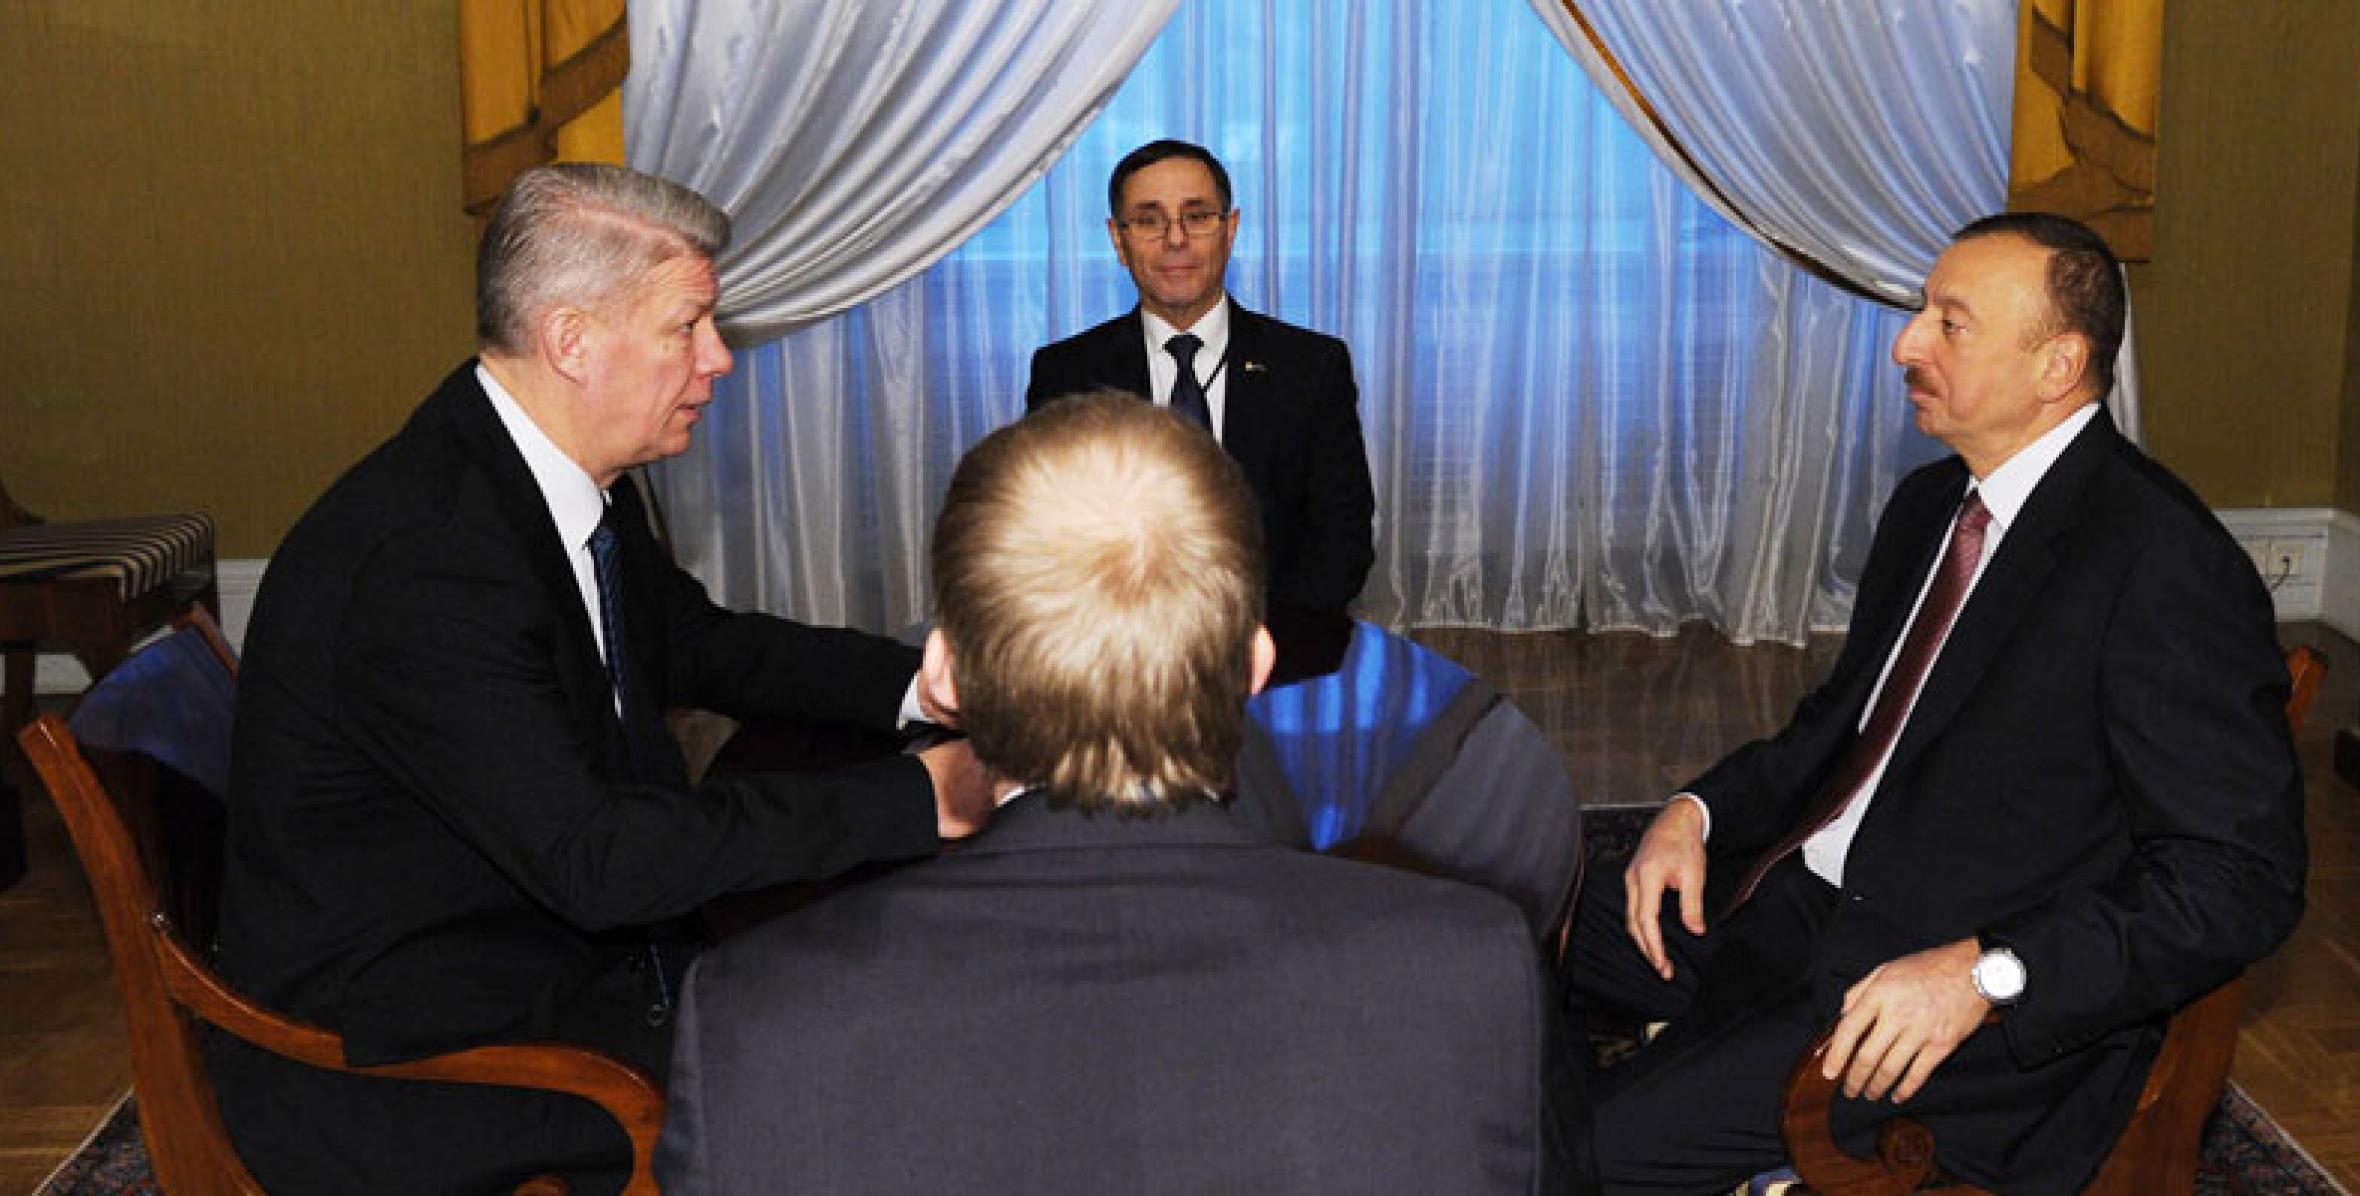 Состоялась встреча Ильхама Алиева и Президента Латвии Валдиса Затлерса один на один